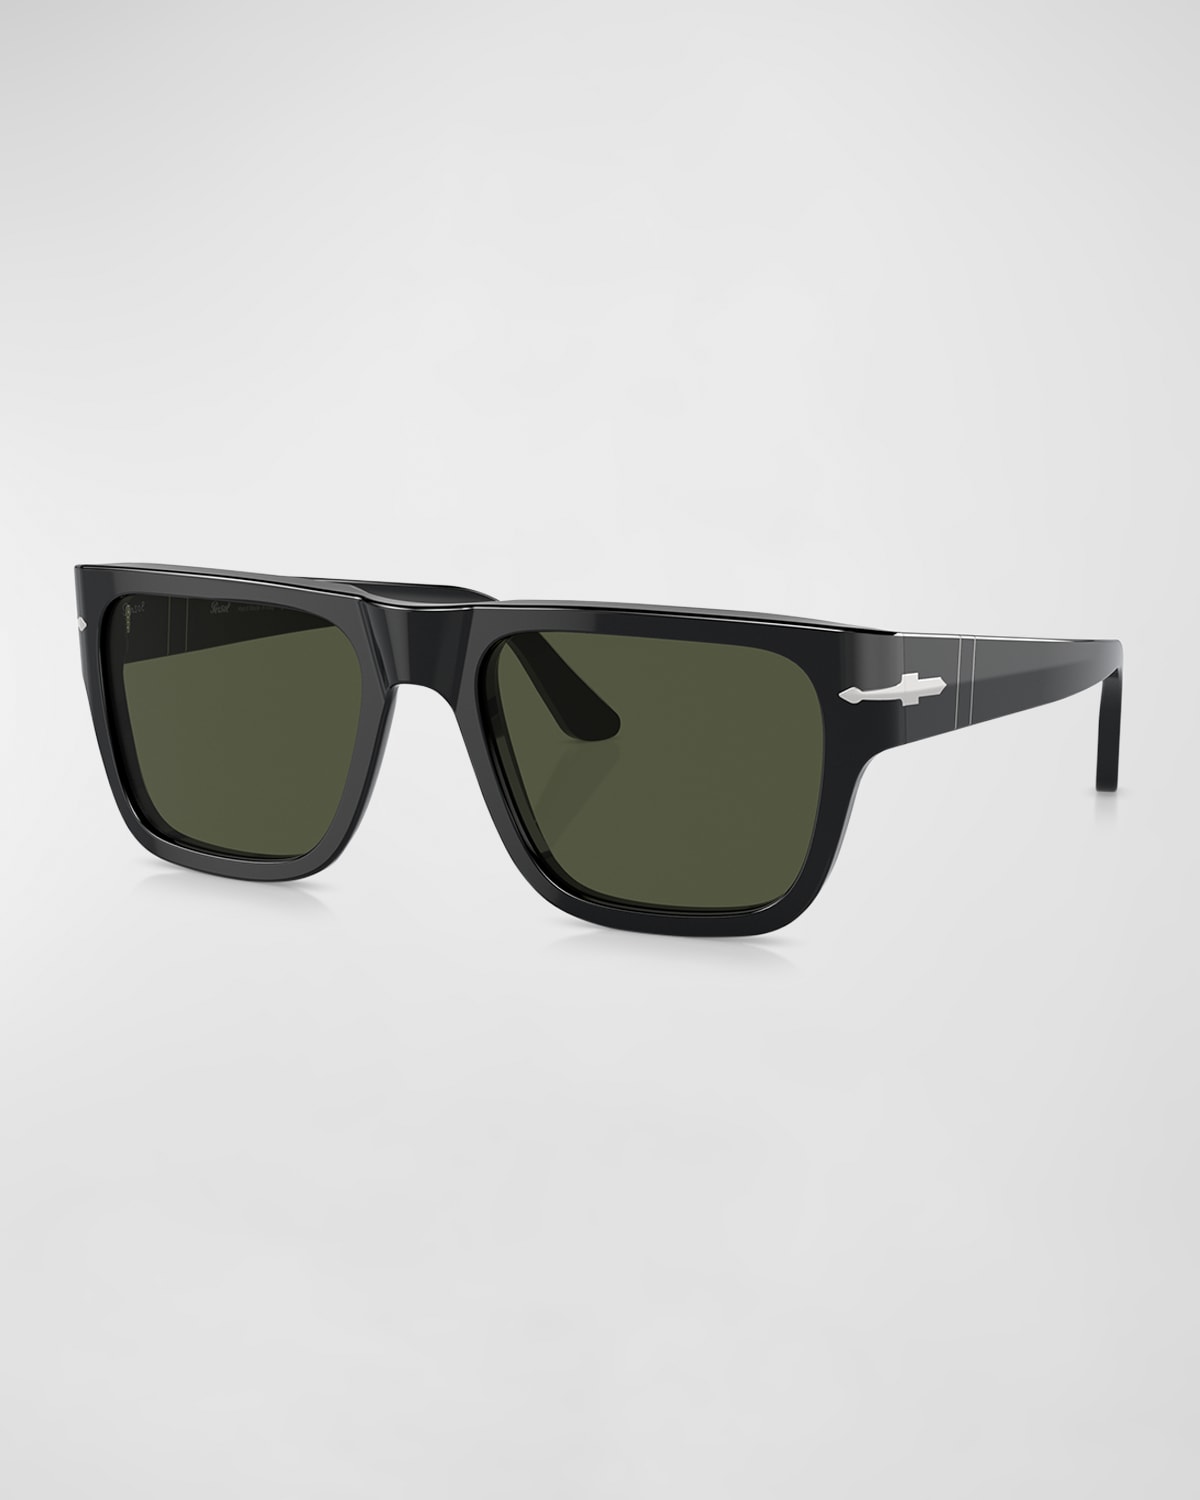 Men's Acetate Square Sunglasses